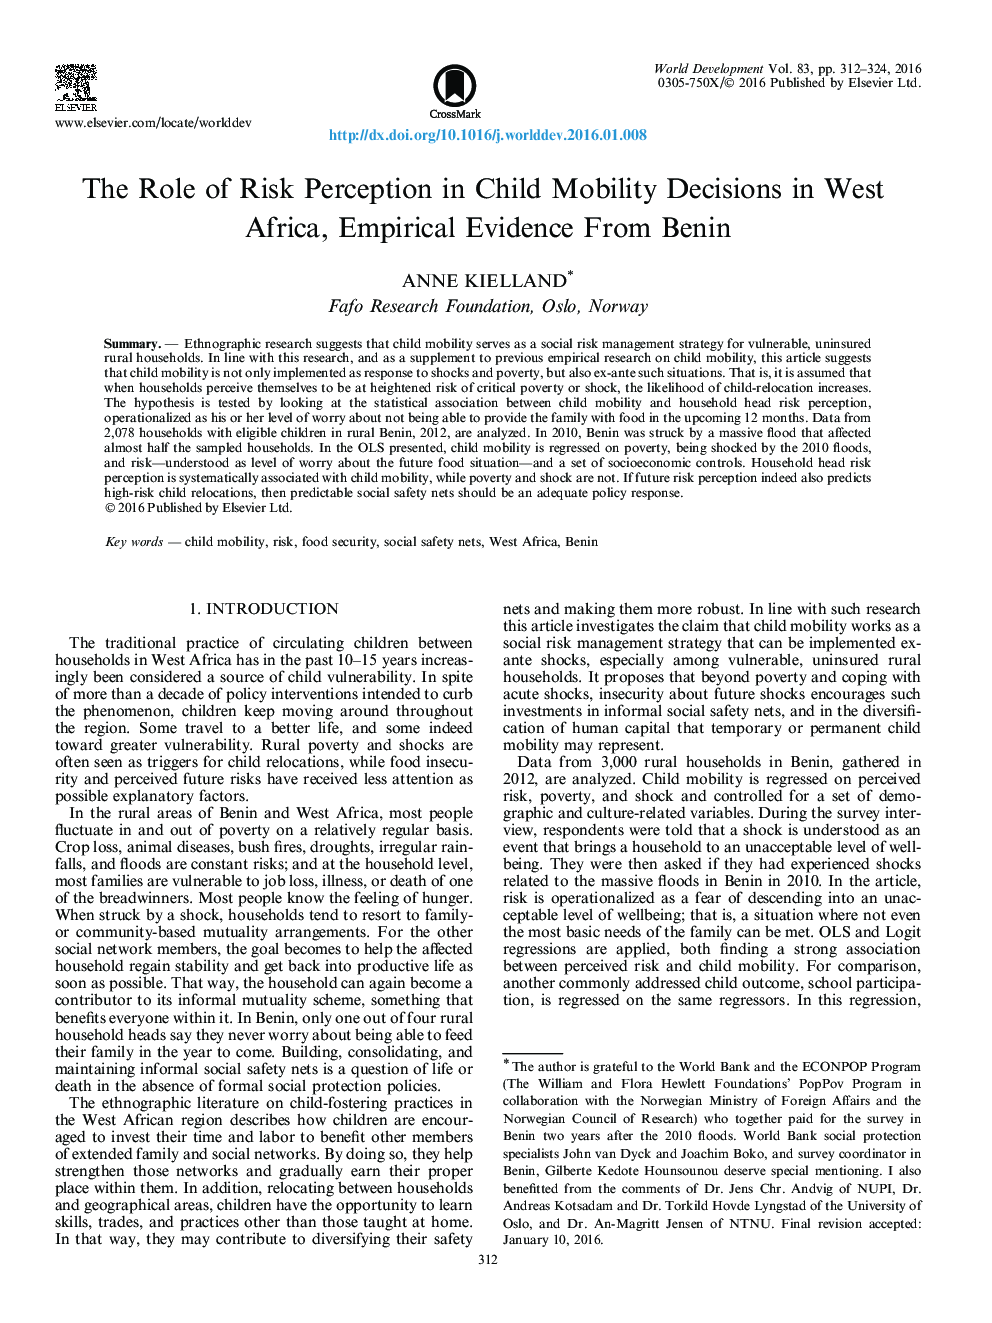 نقش درک تصادفی در تصمیم گیری های حرکتی کودکان در آفریقای غربی، شواهد تجربی از بنین 